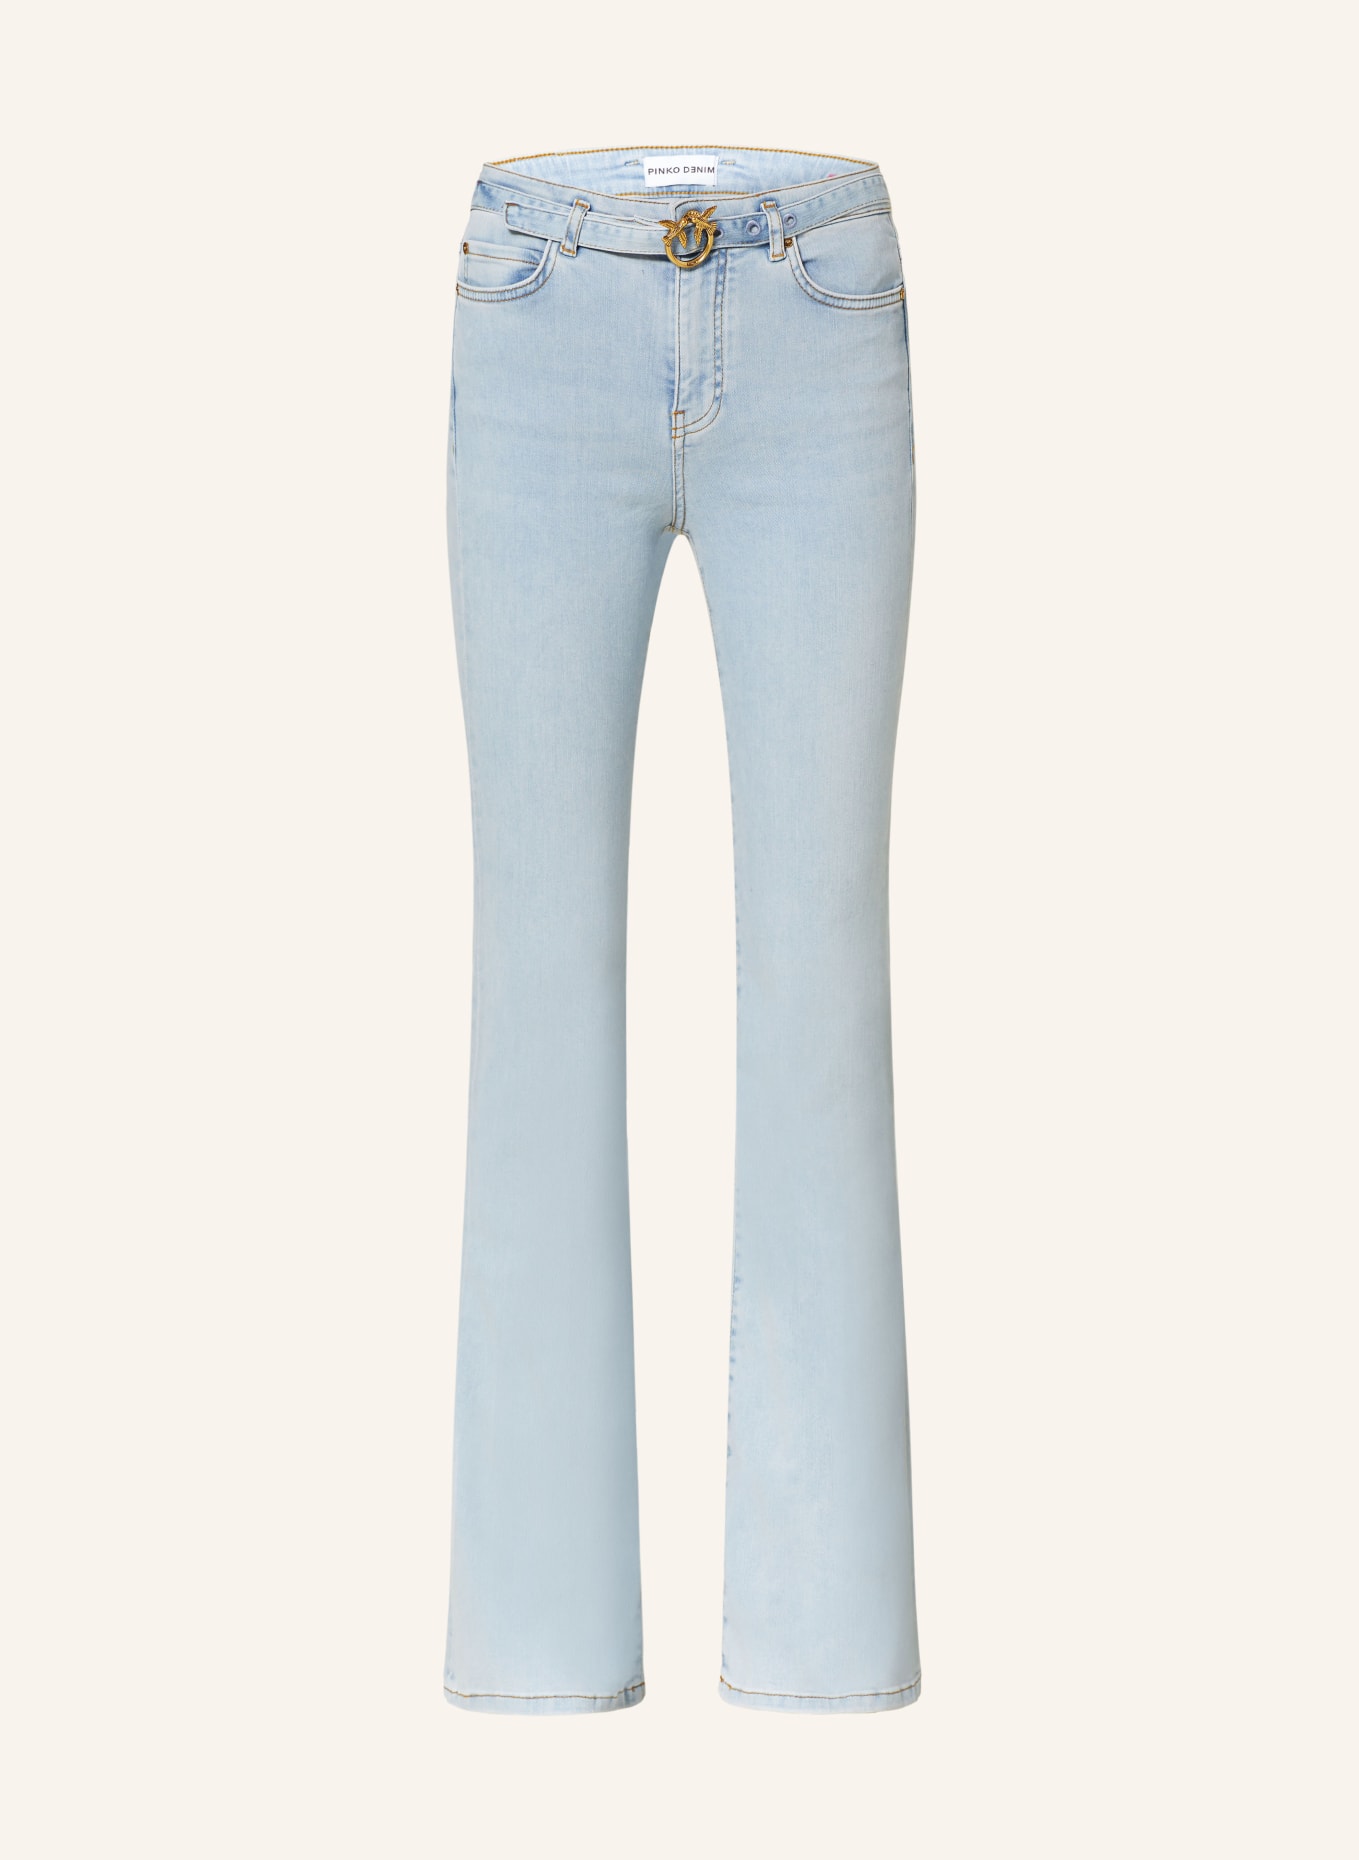 PINKO Flared Jeans FLORA, Farbe: PJN LAVAGGIO BLEACH CHIARO (Bild 1)